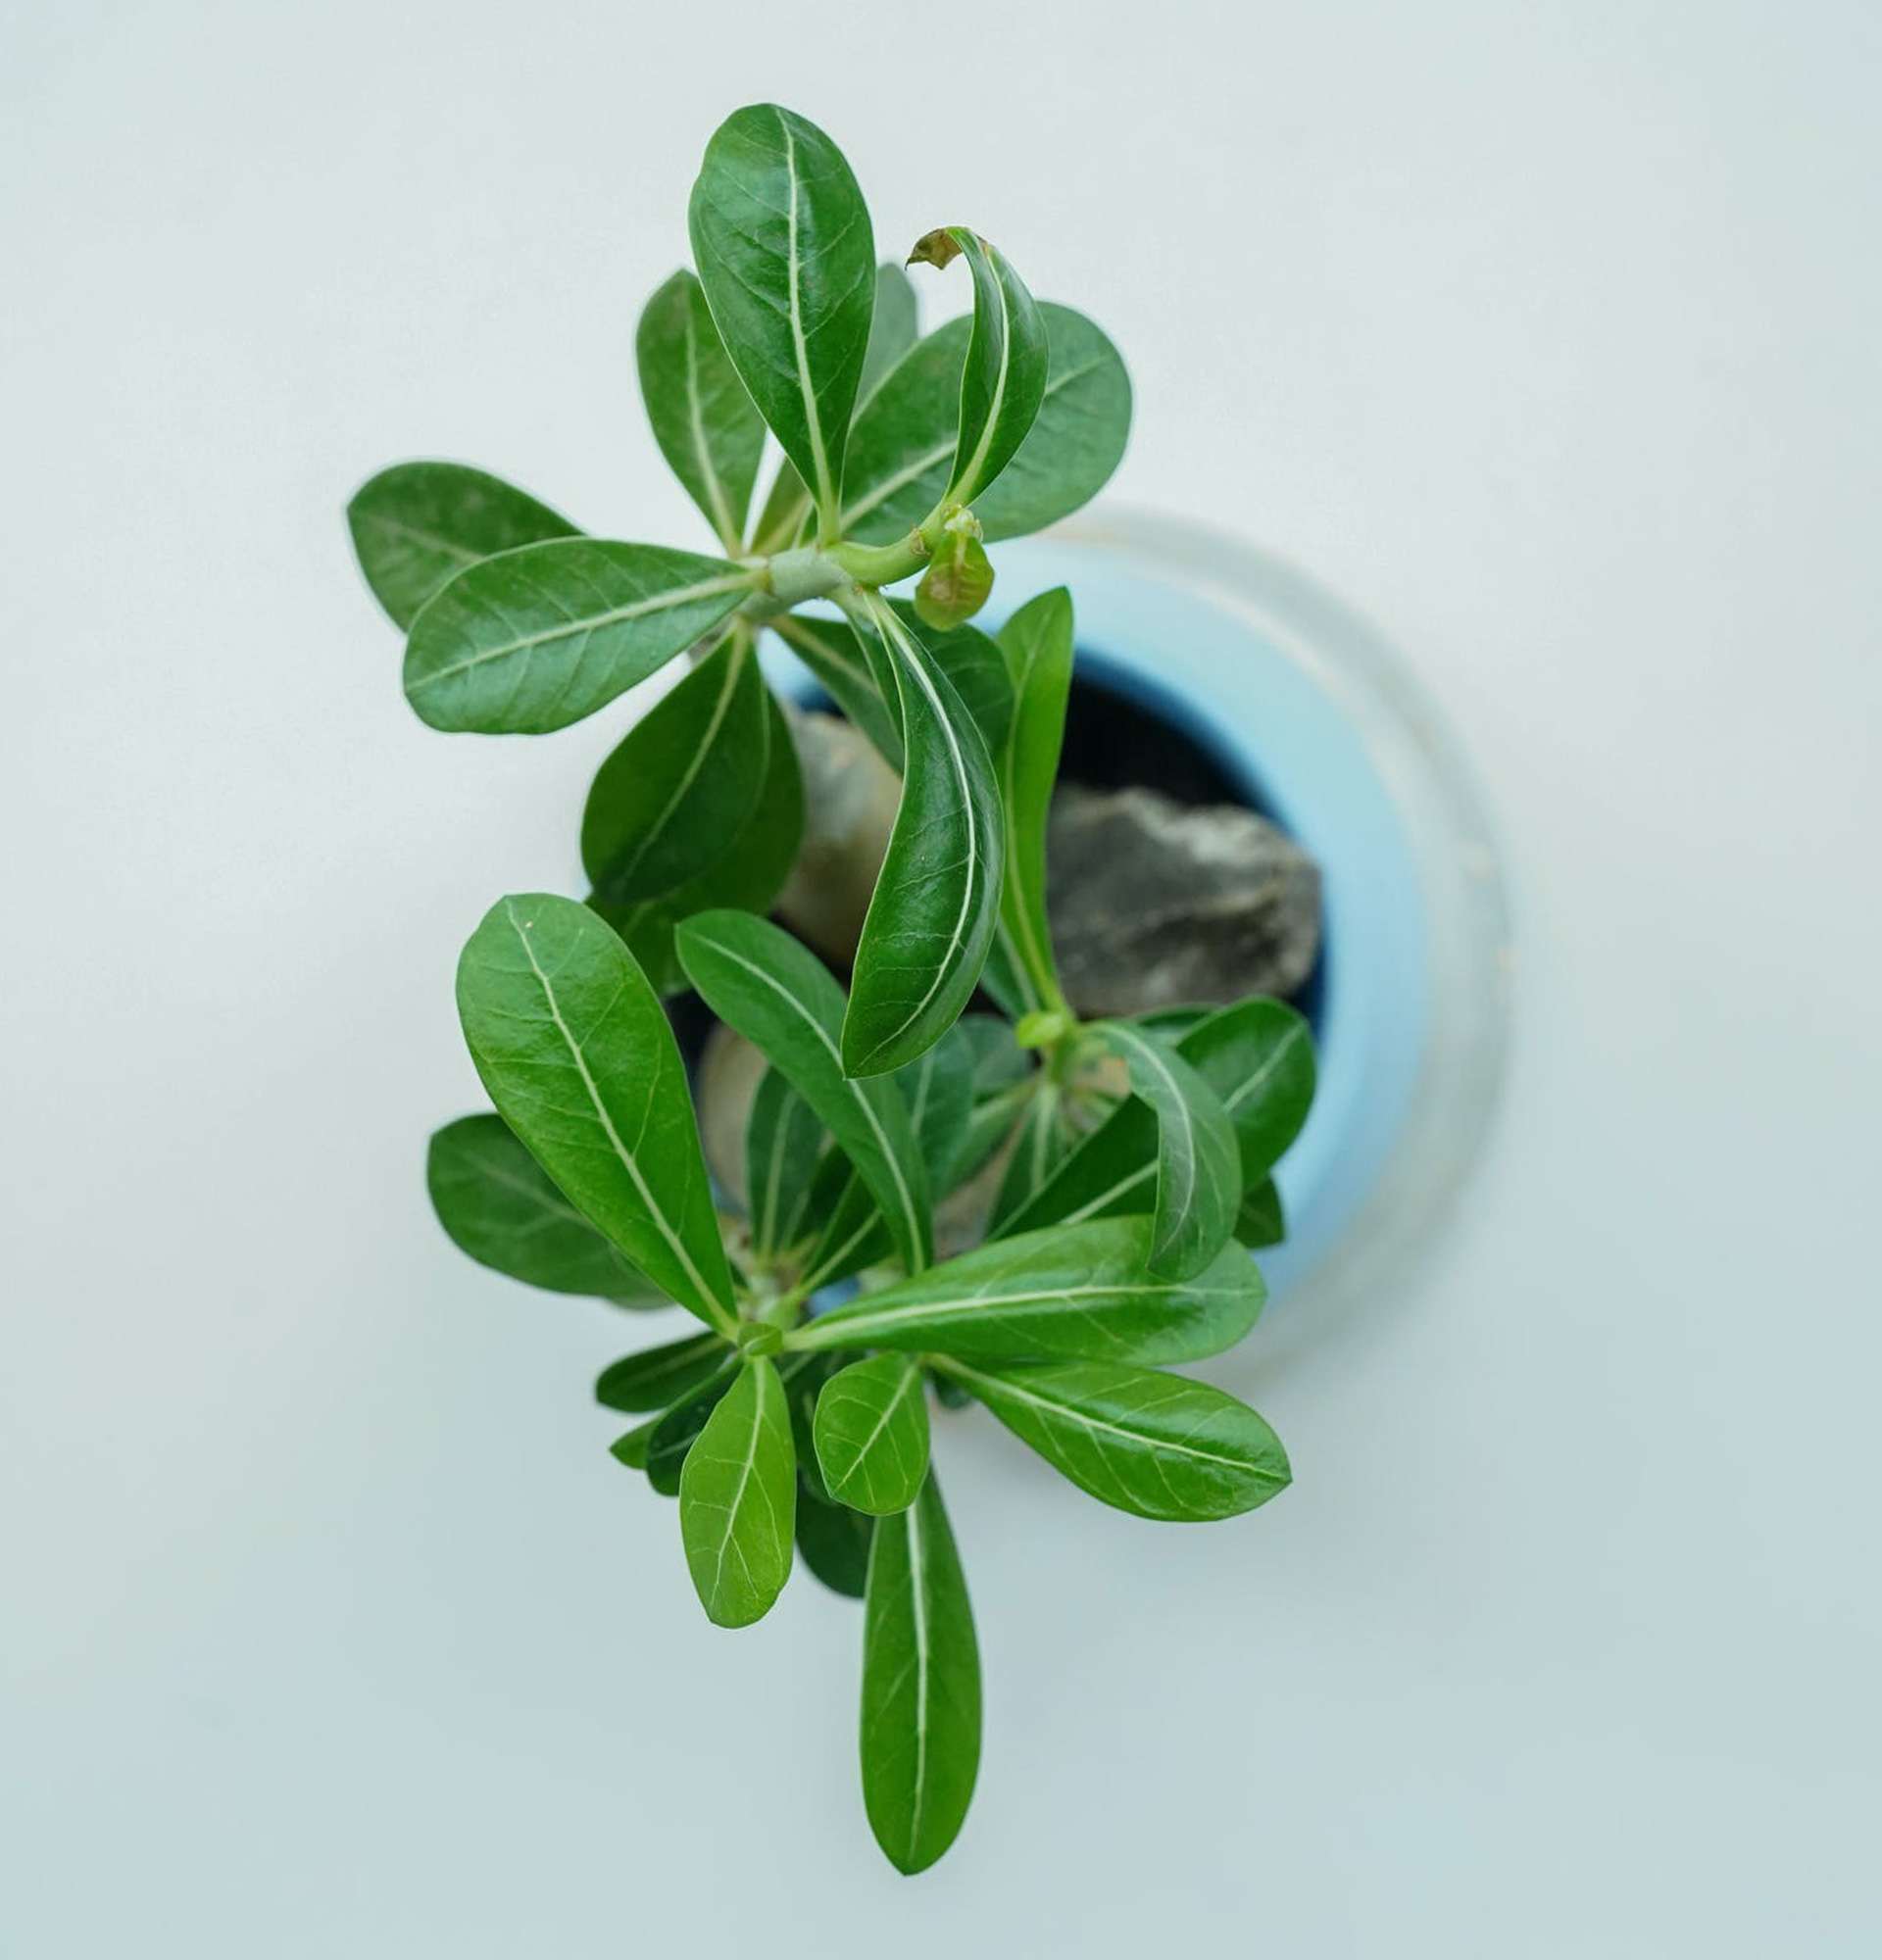  вазон импальская лилия фото - домашний адениум